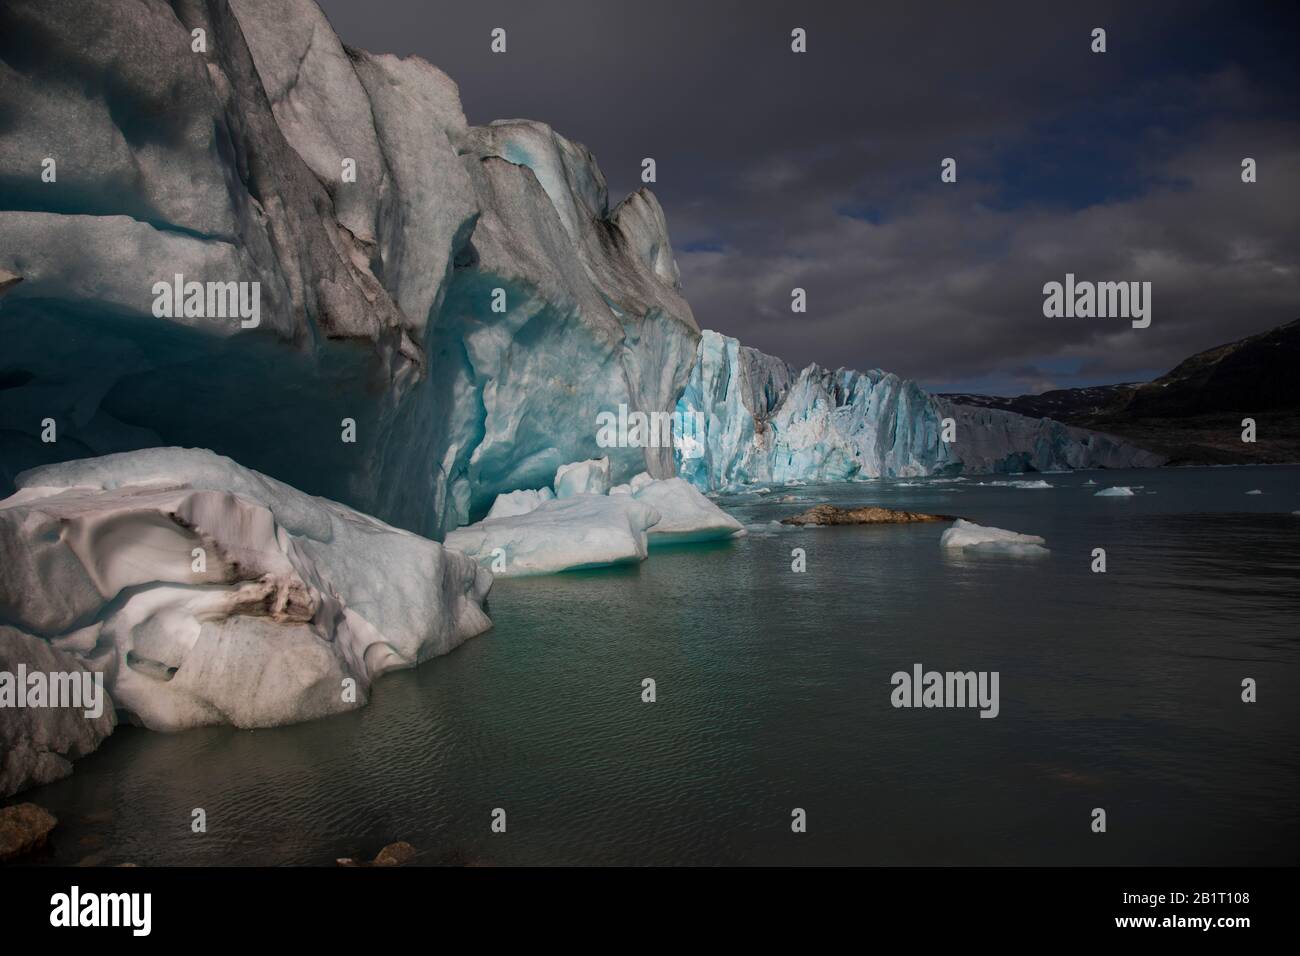 Die Gletscherfront auf dem Wasser. Schmelzendes und winkendes Eis Stockfoto